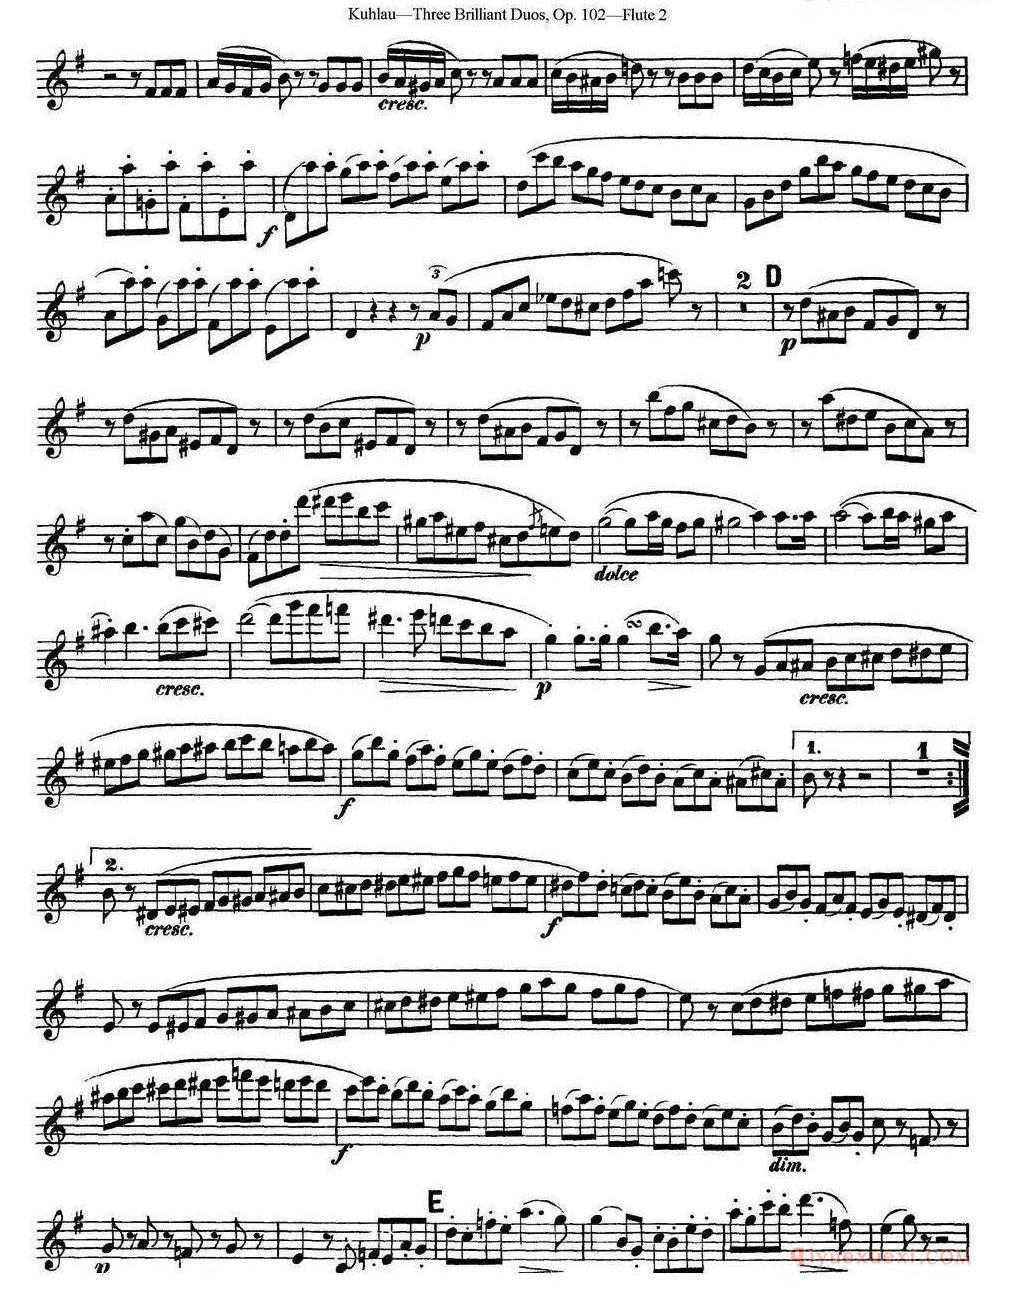 库劳长笛二重奏练习三段OP.102——Flute 2（NO.2） 